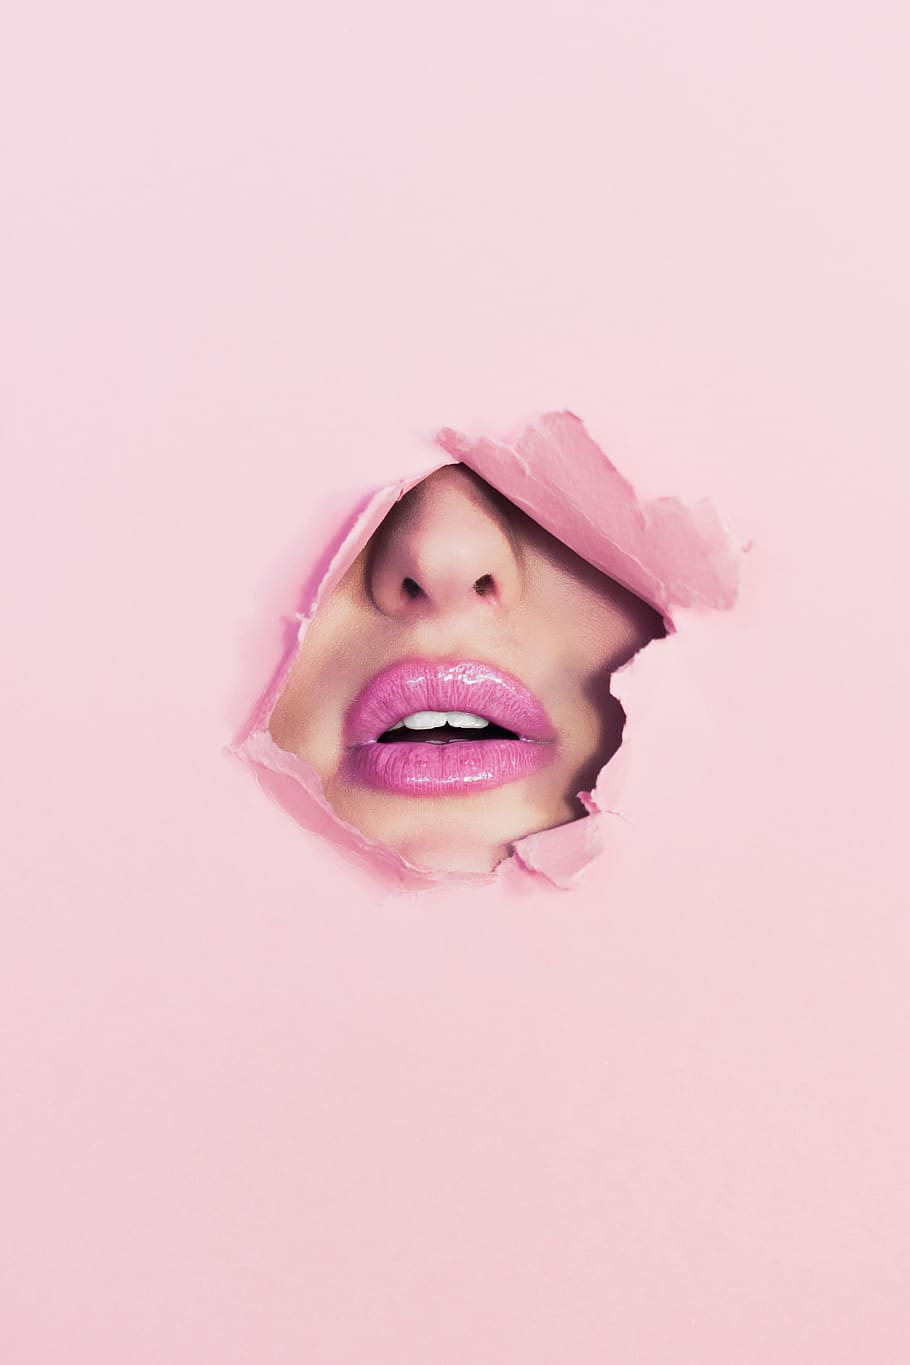 riasan, mulut, lipstik, wanita, warna merah muda, bagian tubuh manusia, studio shot, satu orang, mulut manusia, bagian tubuh